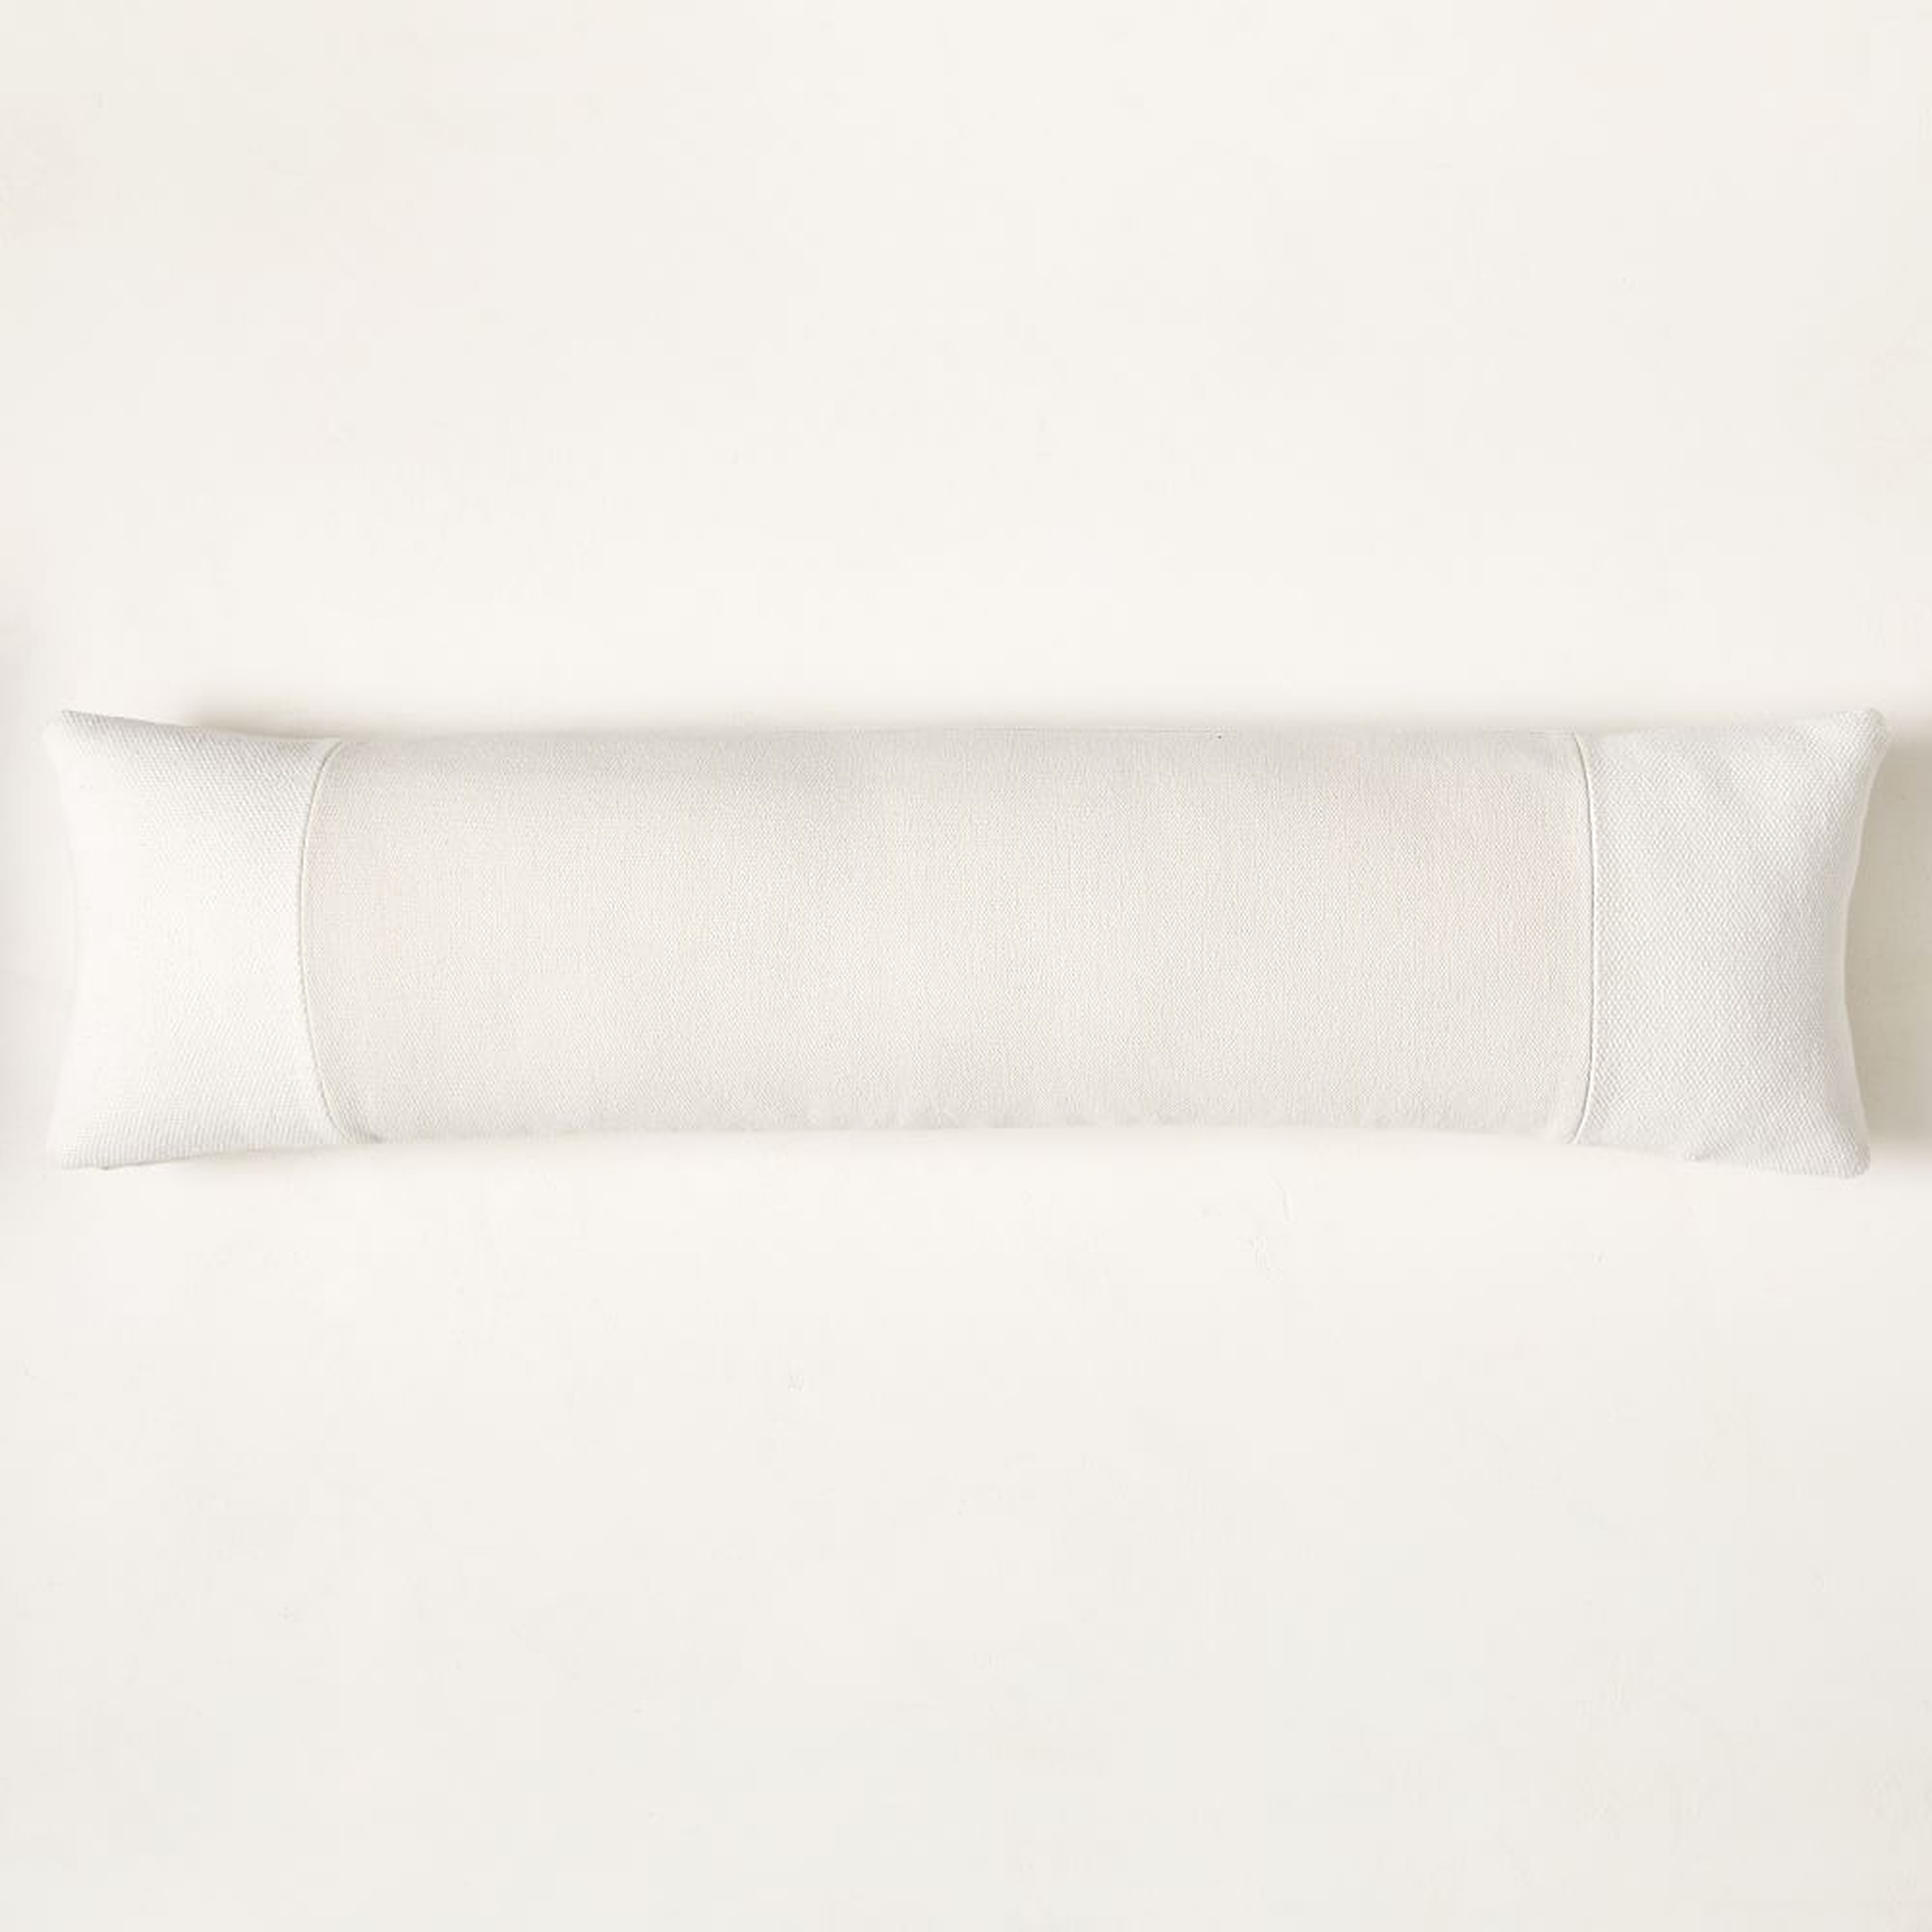 Cotton Canvas Pillow Cover, 12"x46", White - West Elm